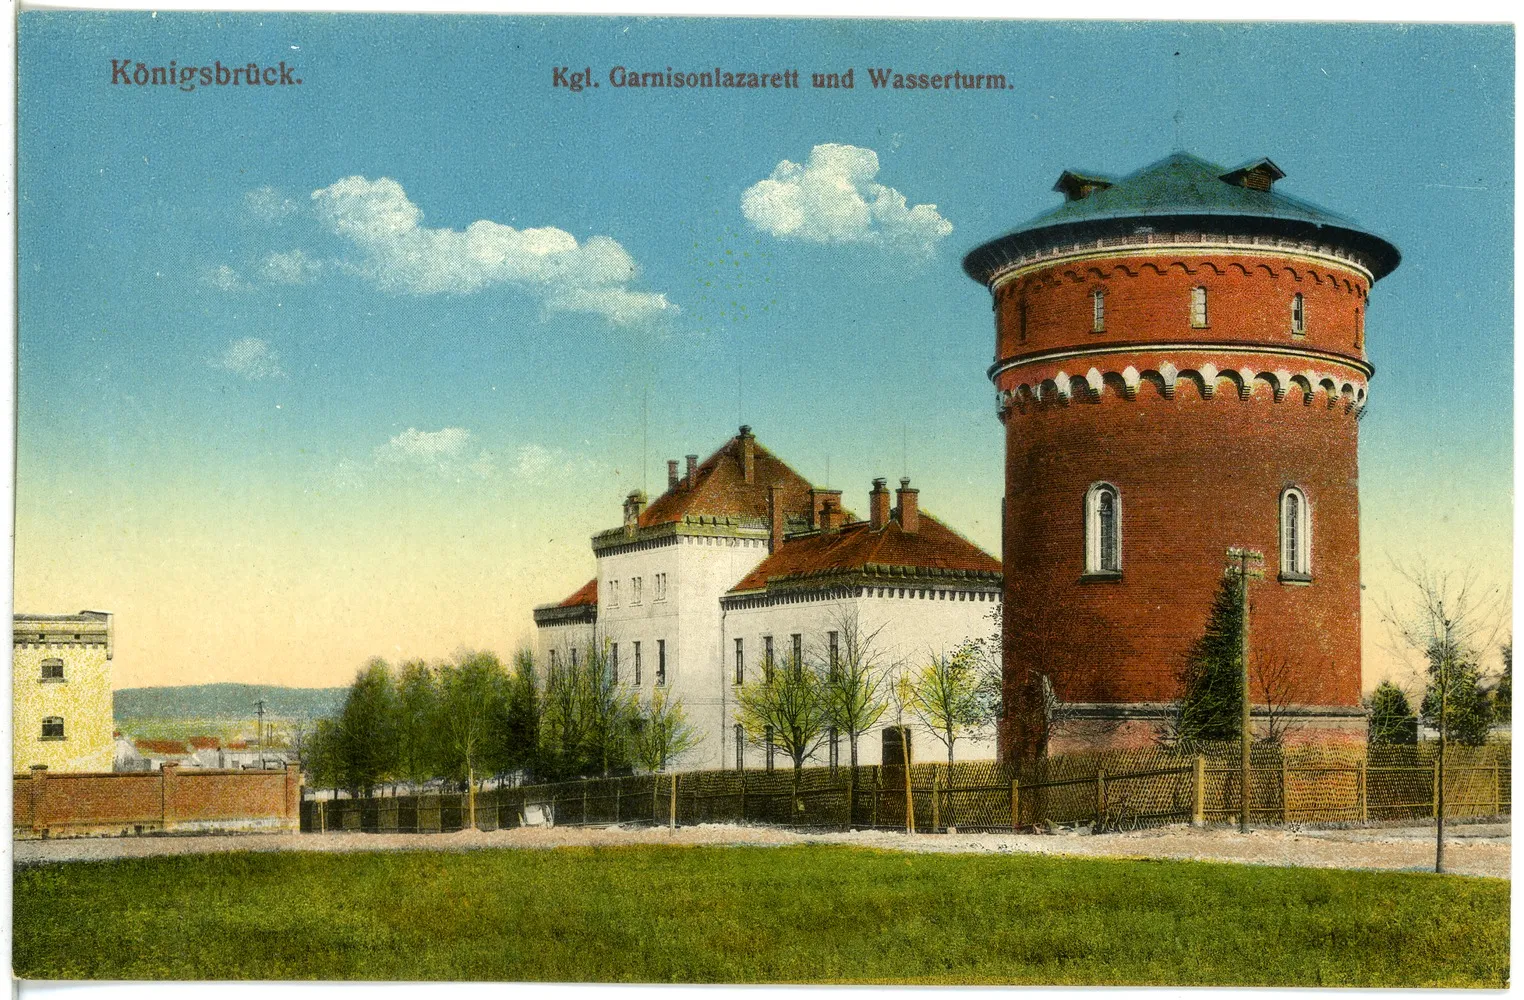 Photo showing: Königsbrück; Garnisonslazarett mit Wasserturm